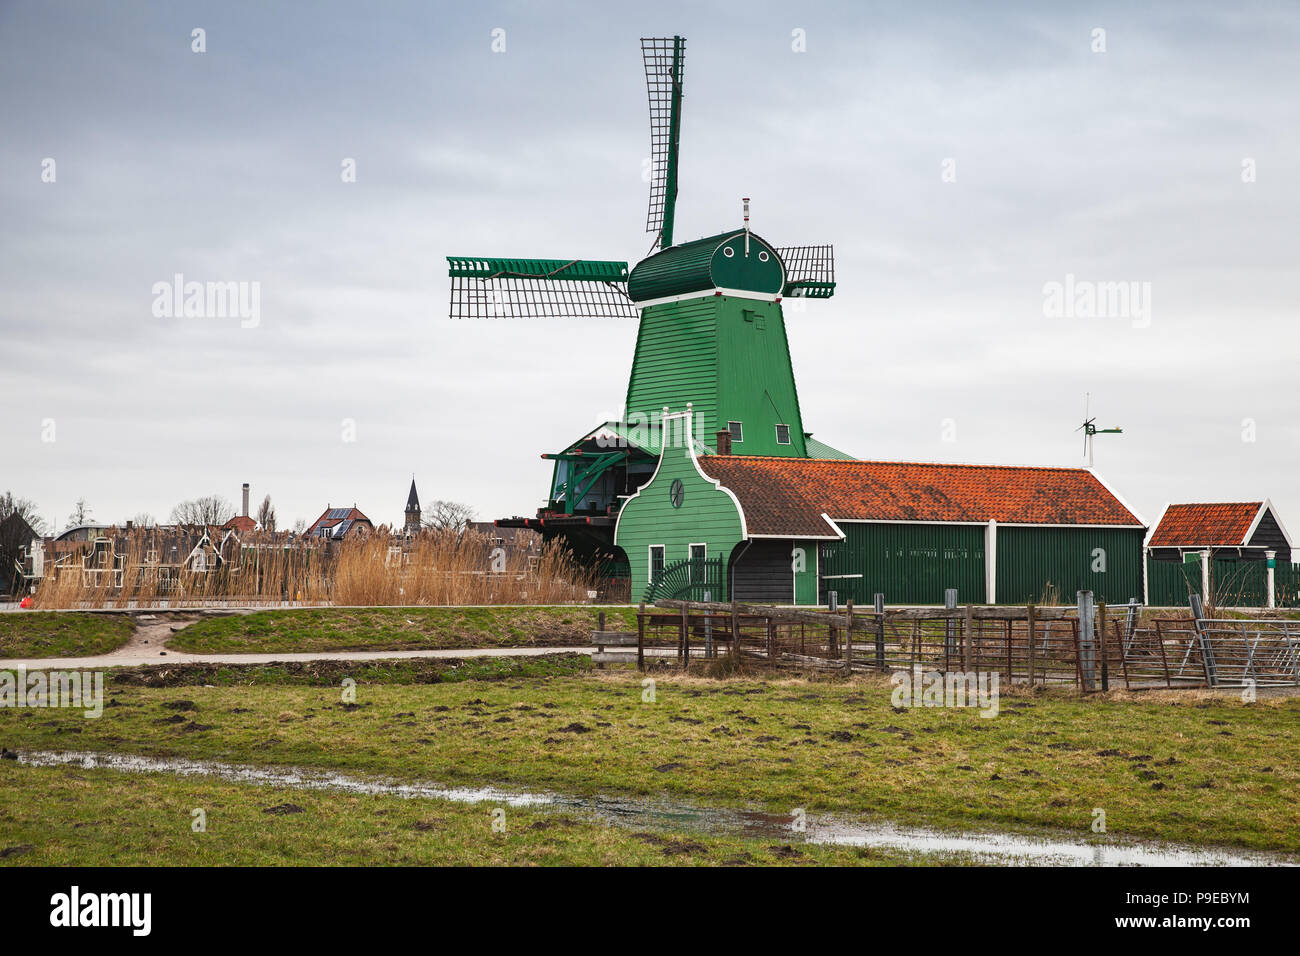 Alte Windmühle aus Holz in der Nähe von Green Scheunen am Fluss Zaan Küste, Zaanse Schans Stadt, beliebten touristischen Attraktionen der Niederlande. Vorort von Amsterdam Stockfoto